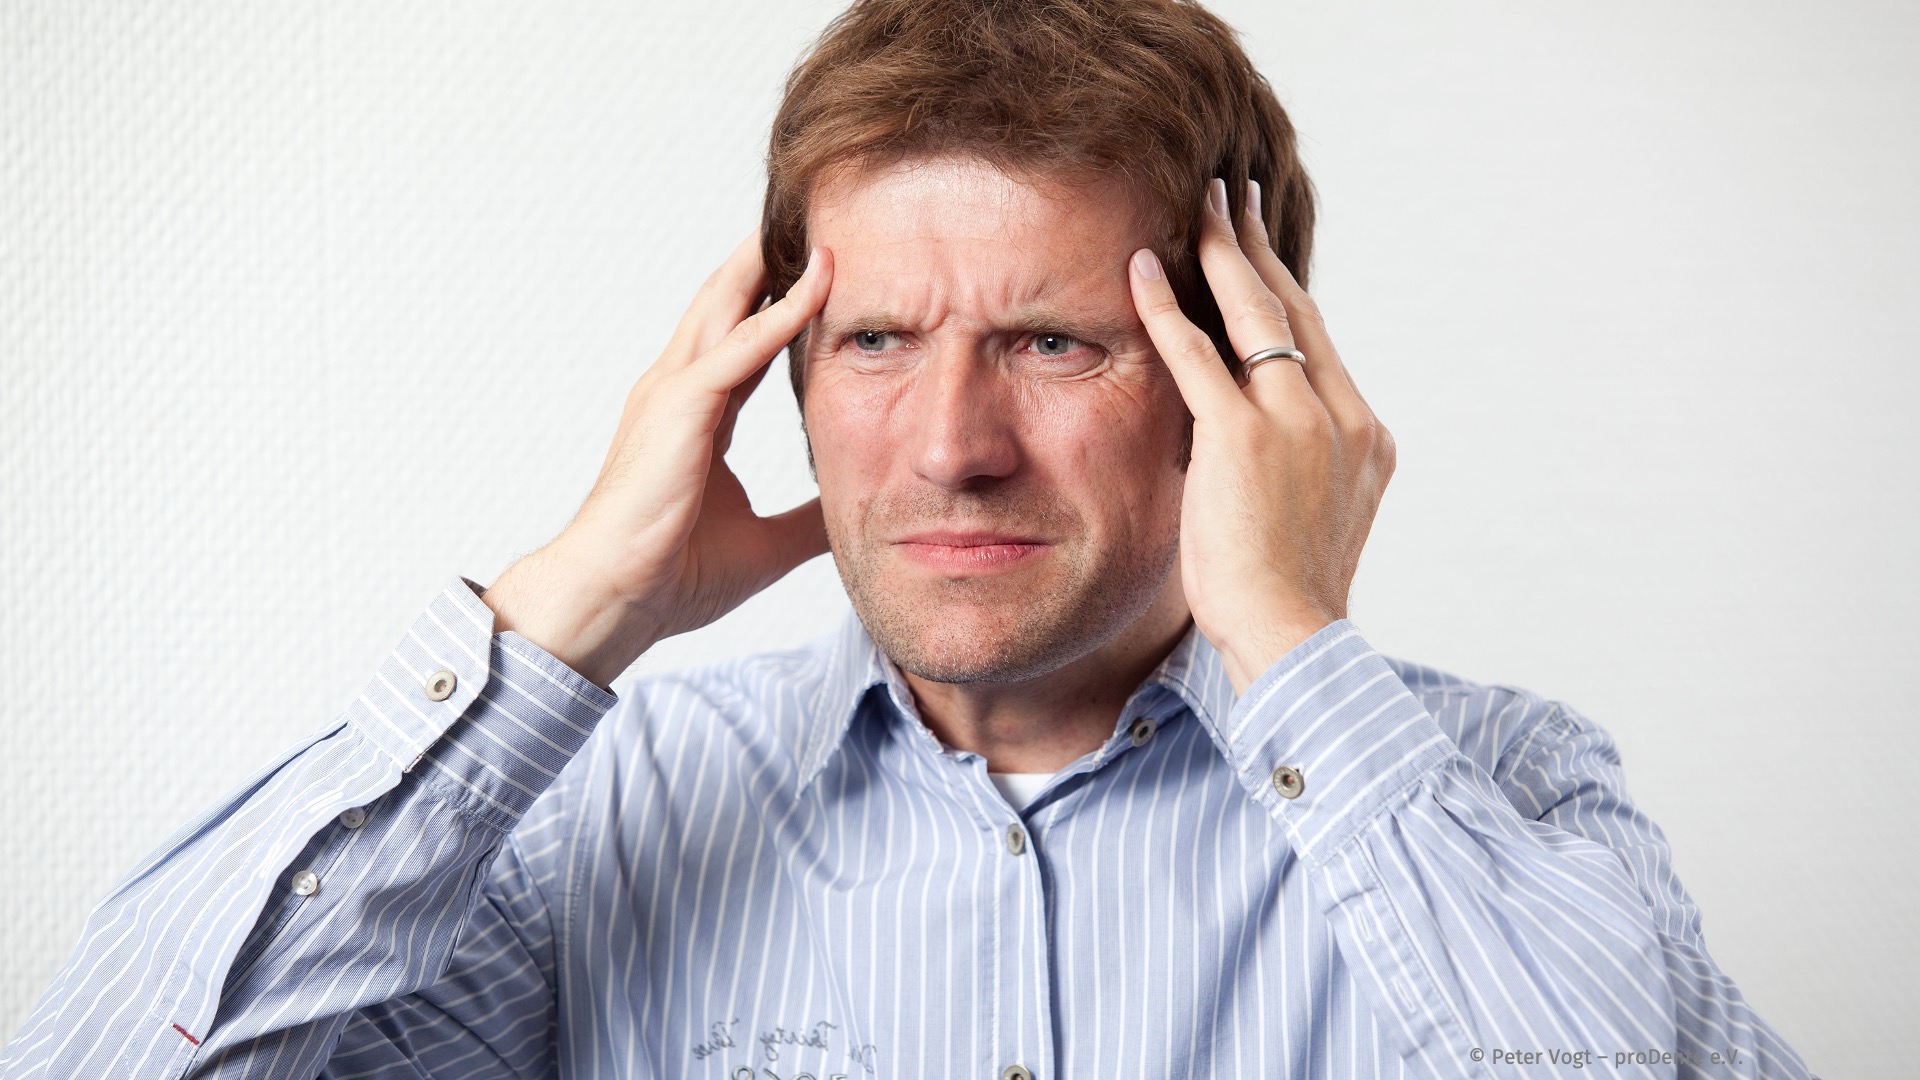 Häufige Kopf- und Schläfenschmerzen sind ein typisches Symptom für eine CMD. Sie werden oft für 